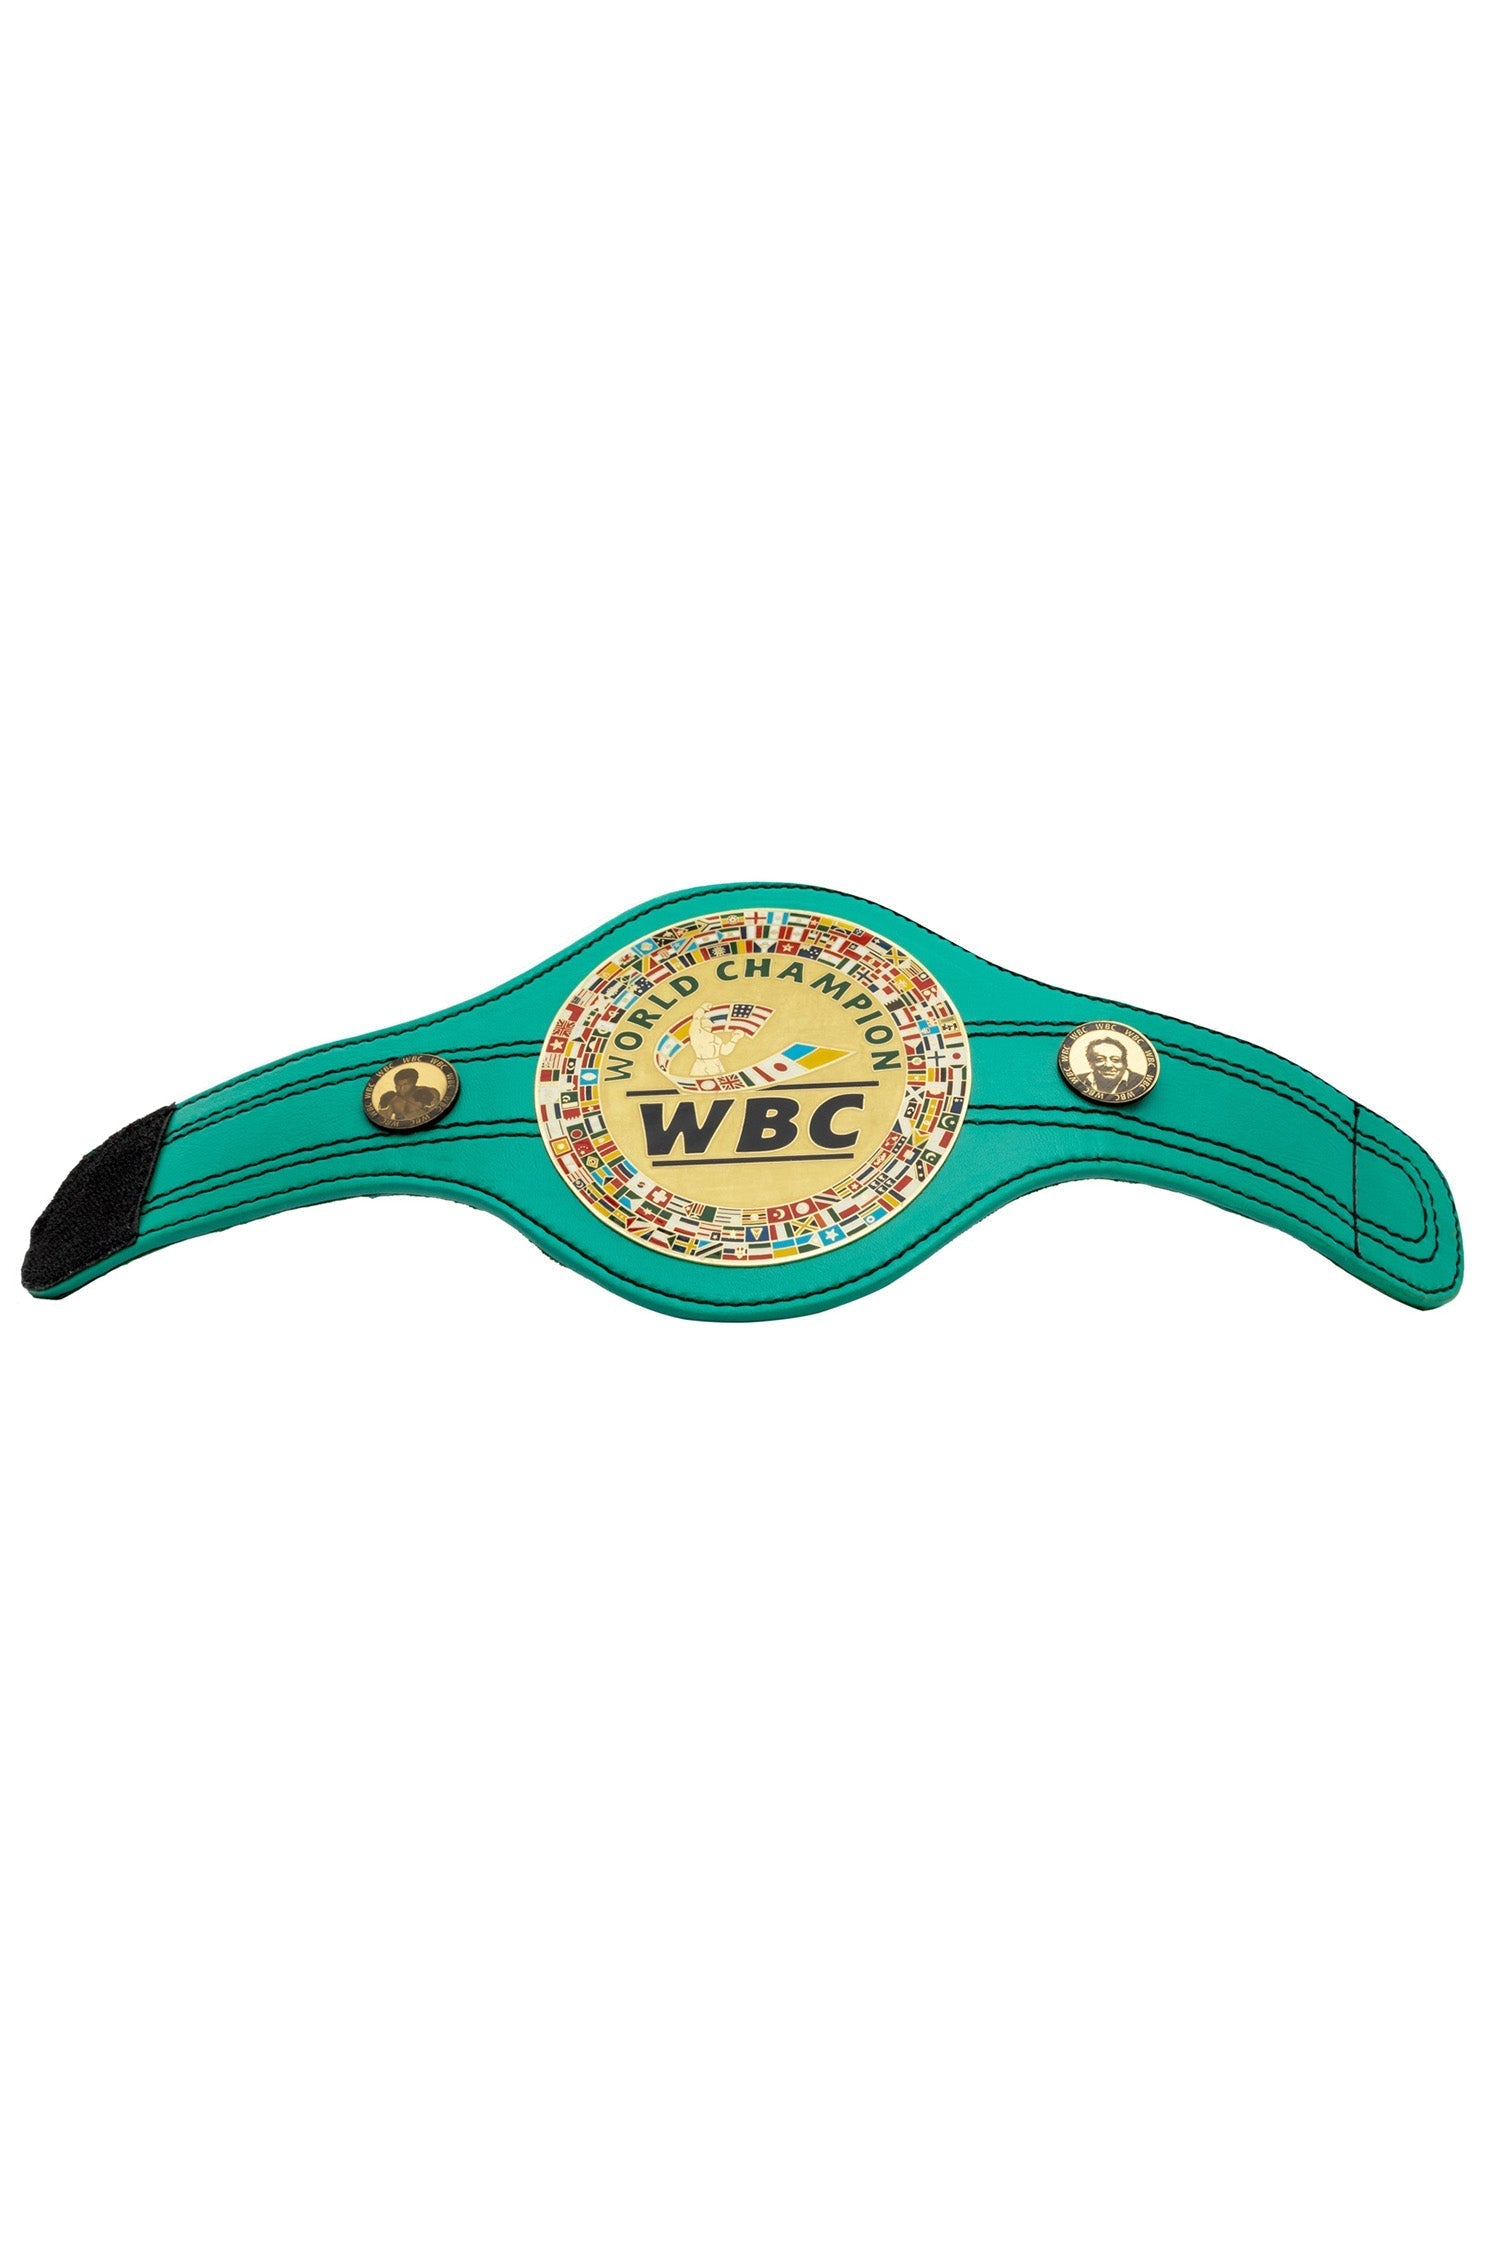 wbc boxing championship belt